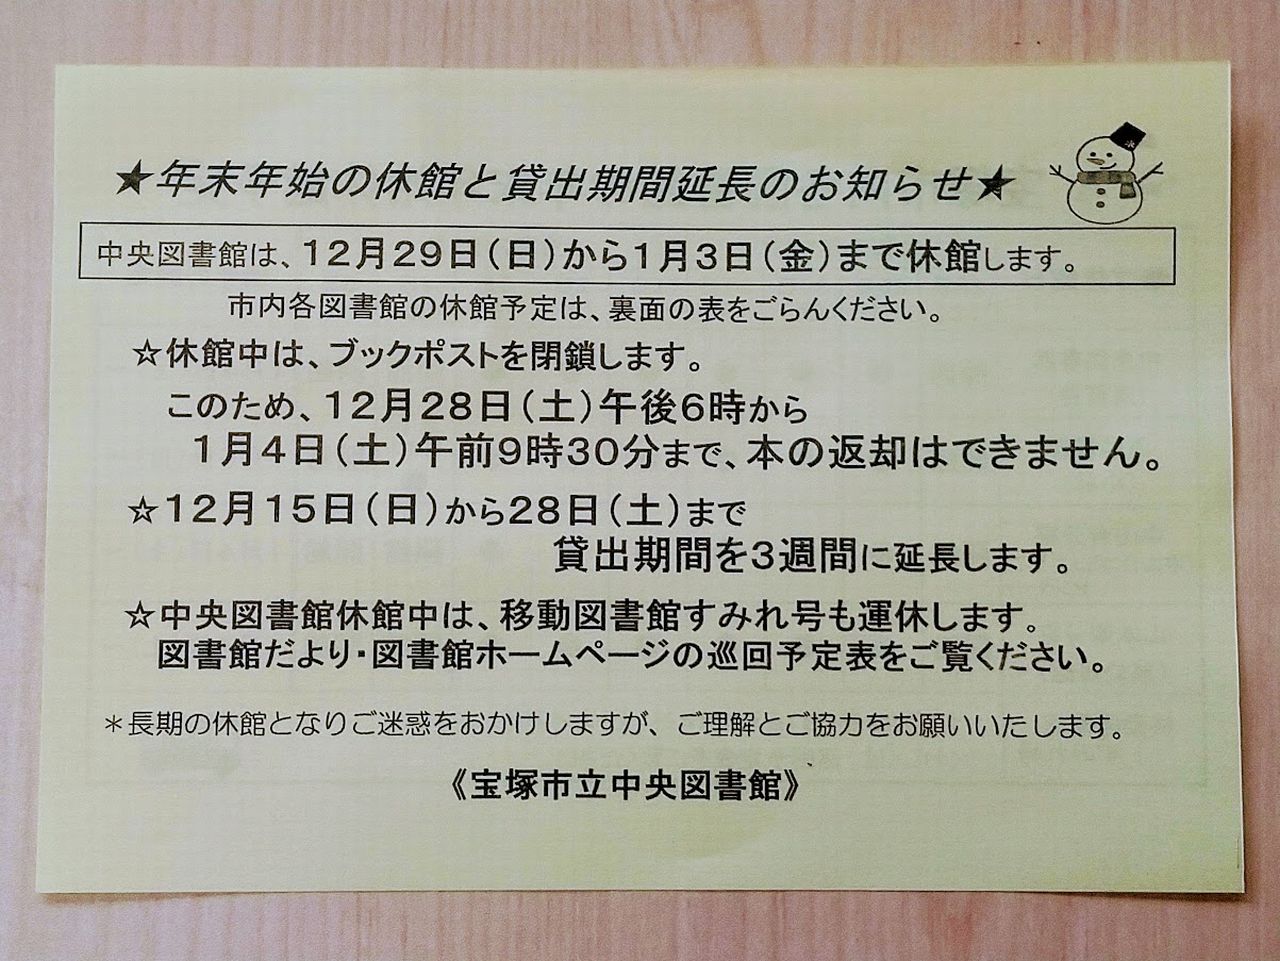 宝塚市立図書館令和元年末貸出期間延長